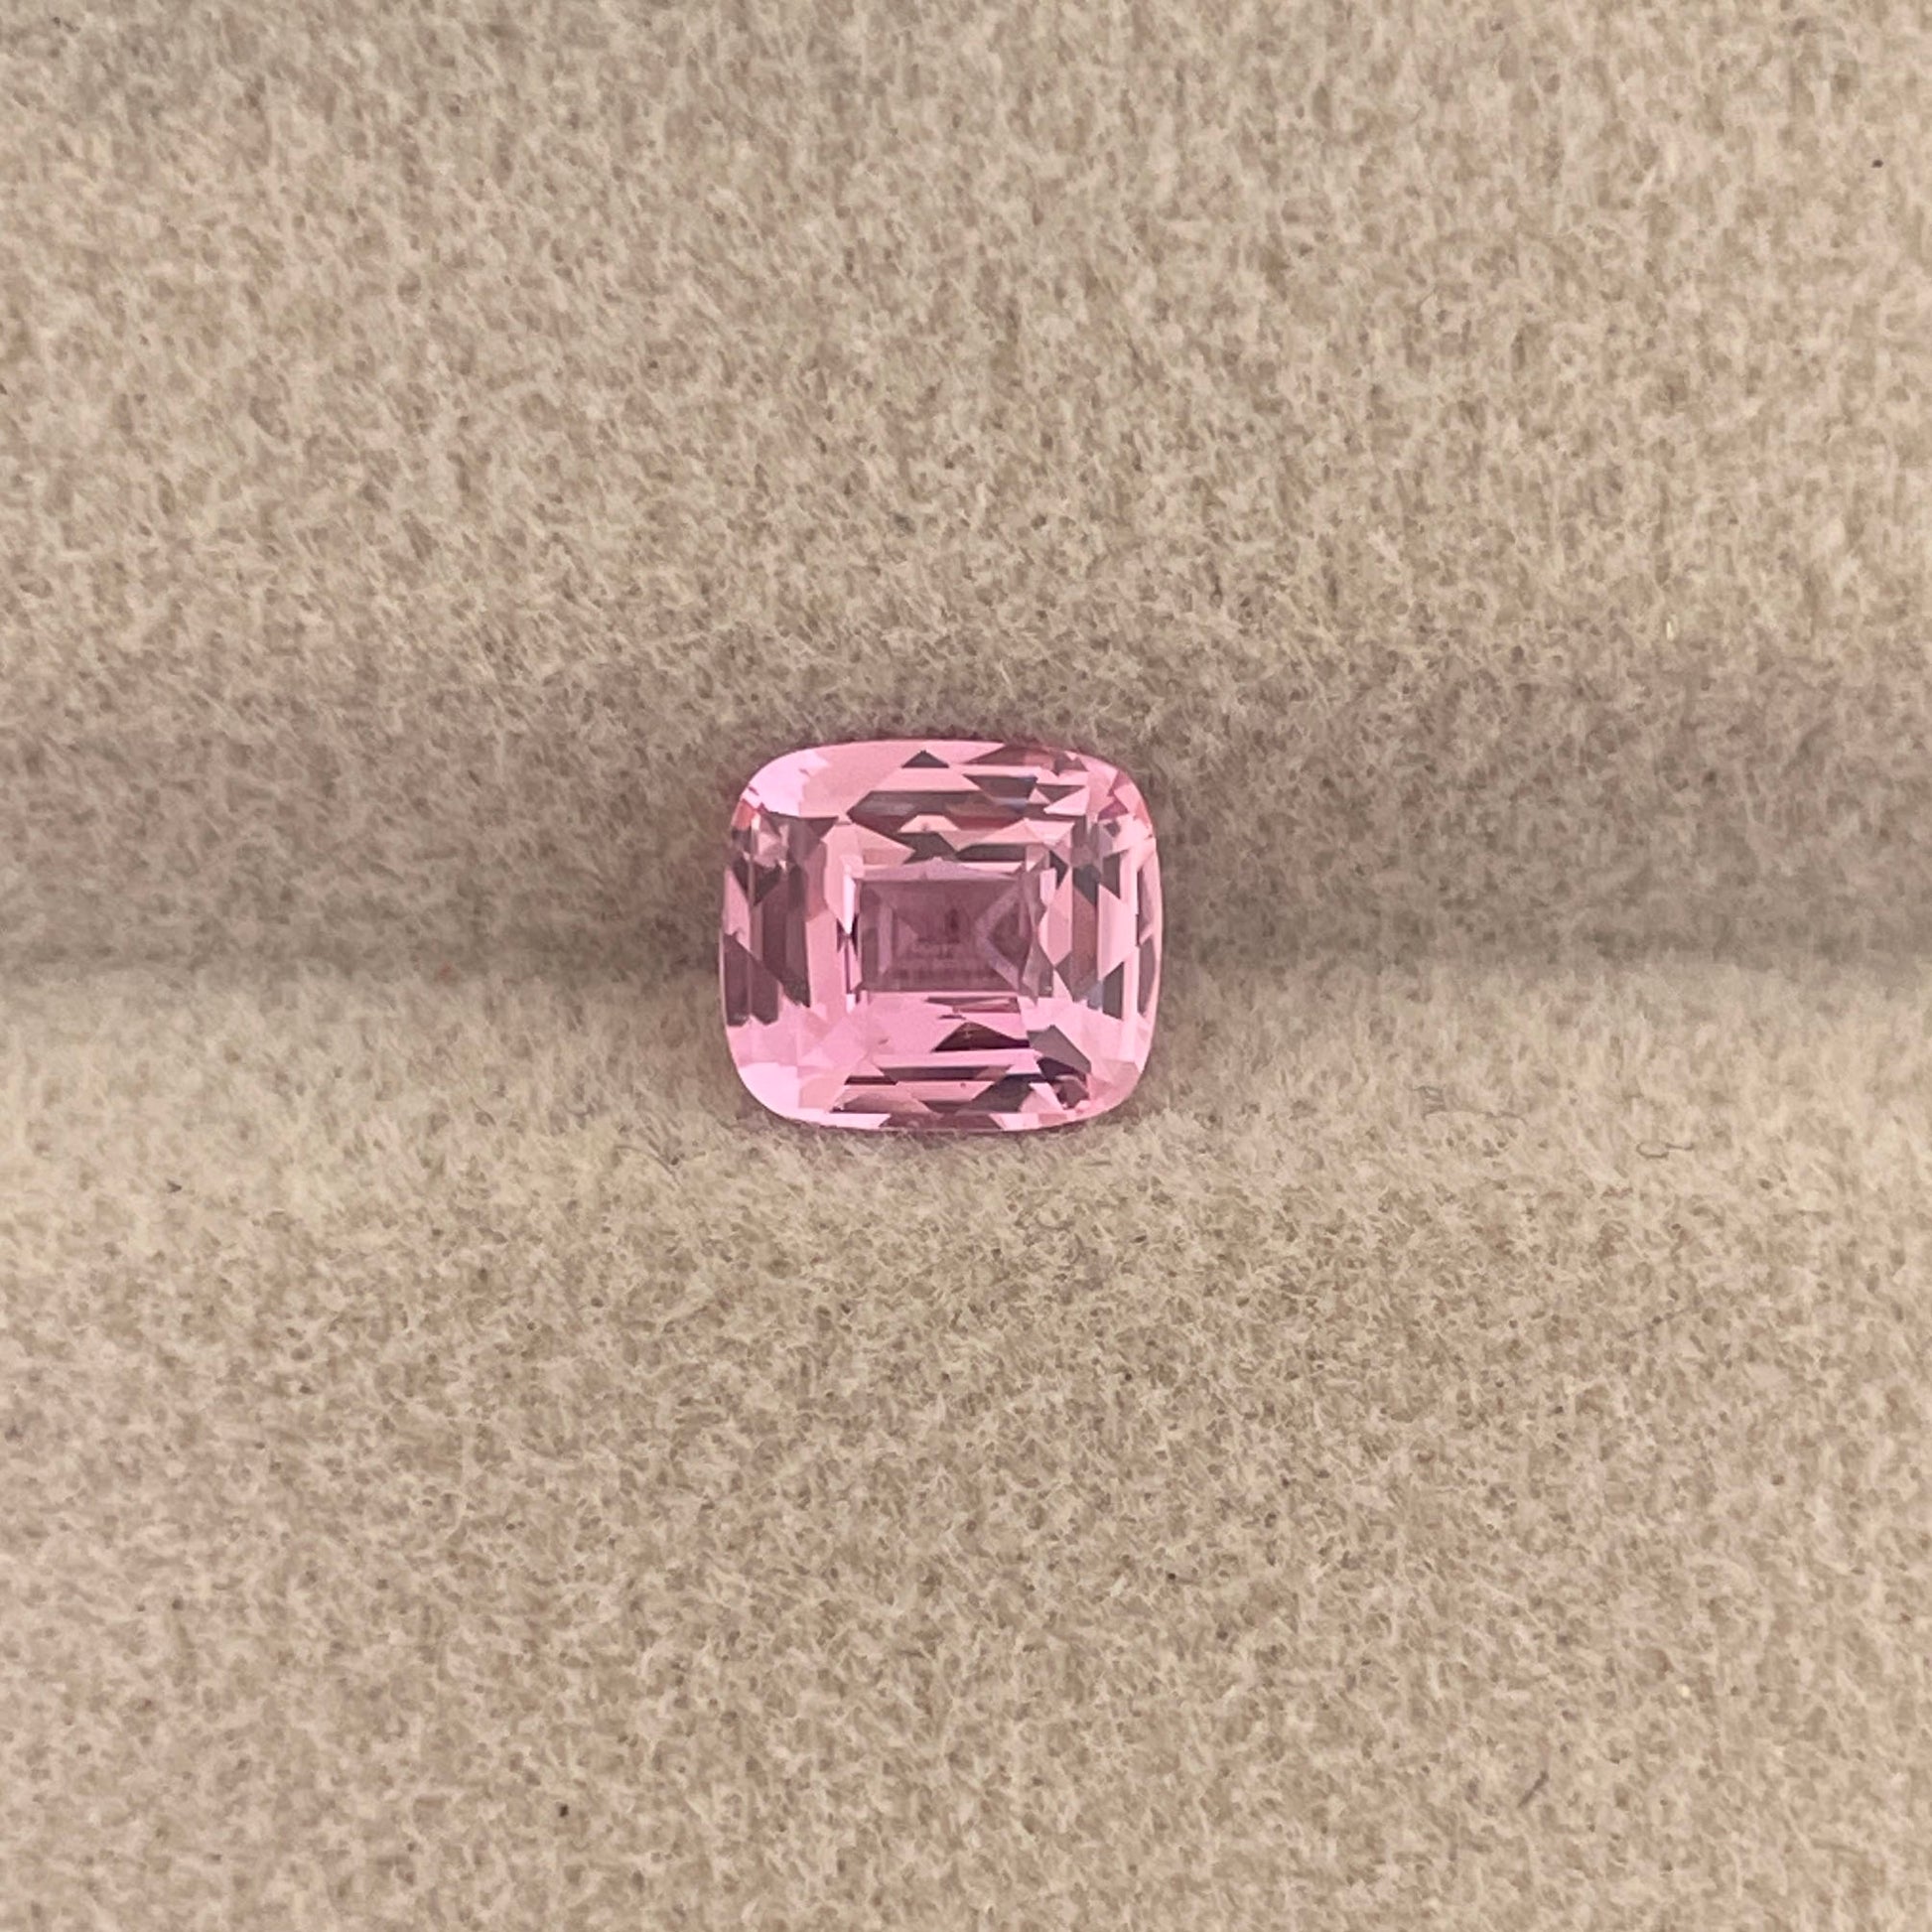 1.14 Carat Pink Sapphire, Certified Don CeSar Pink Sapphire